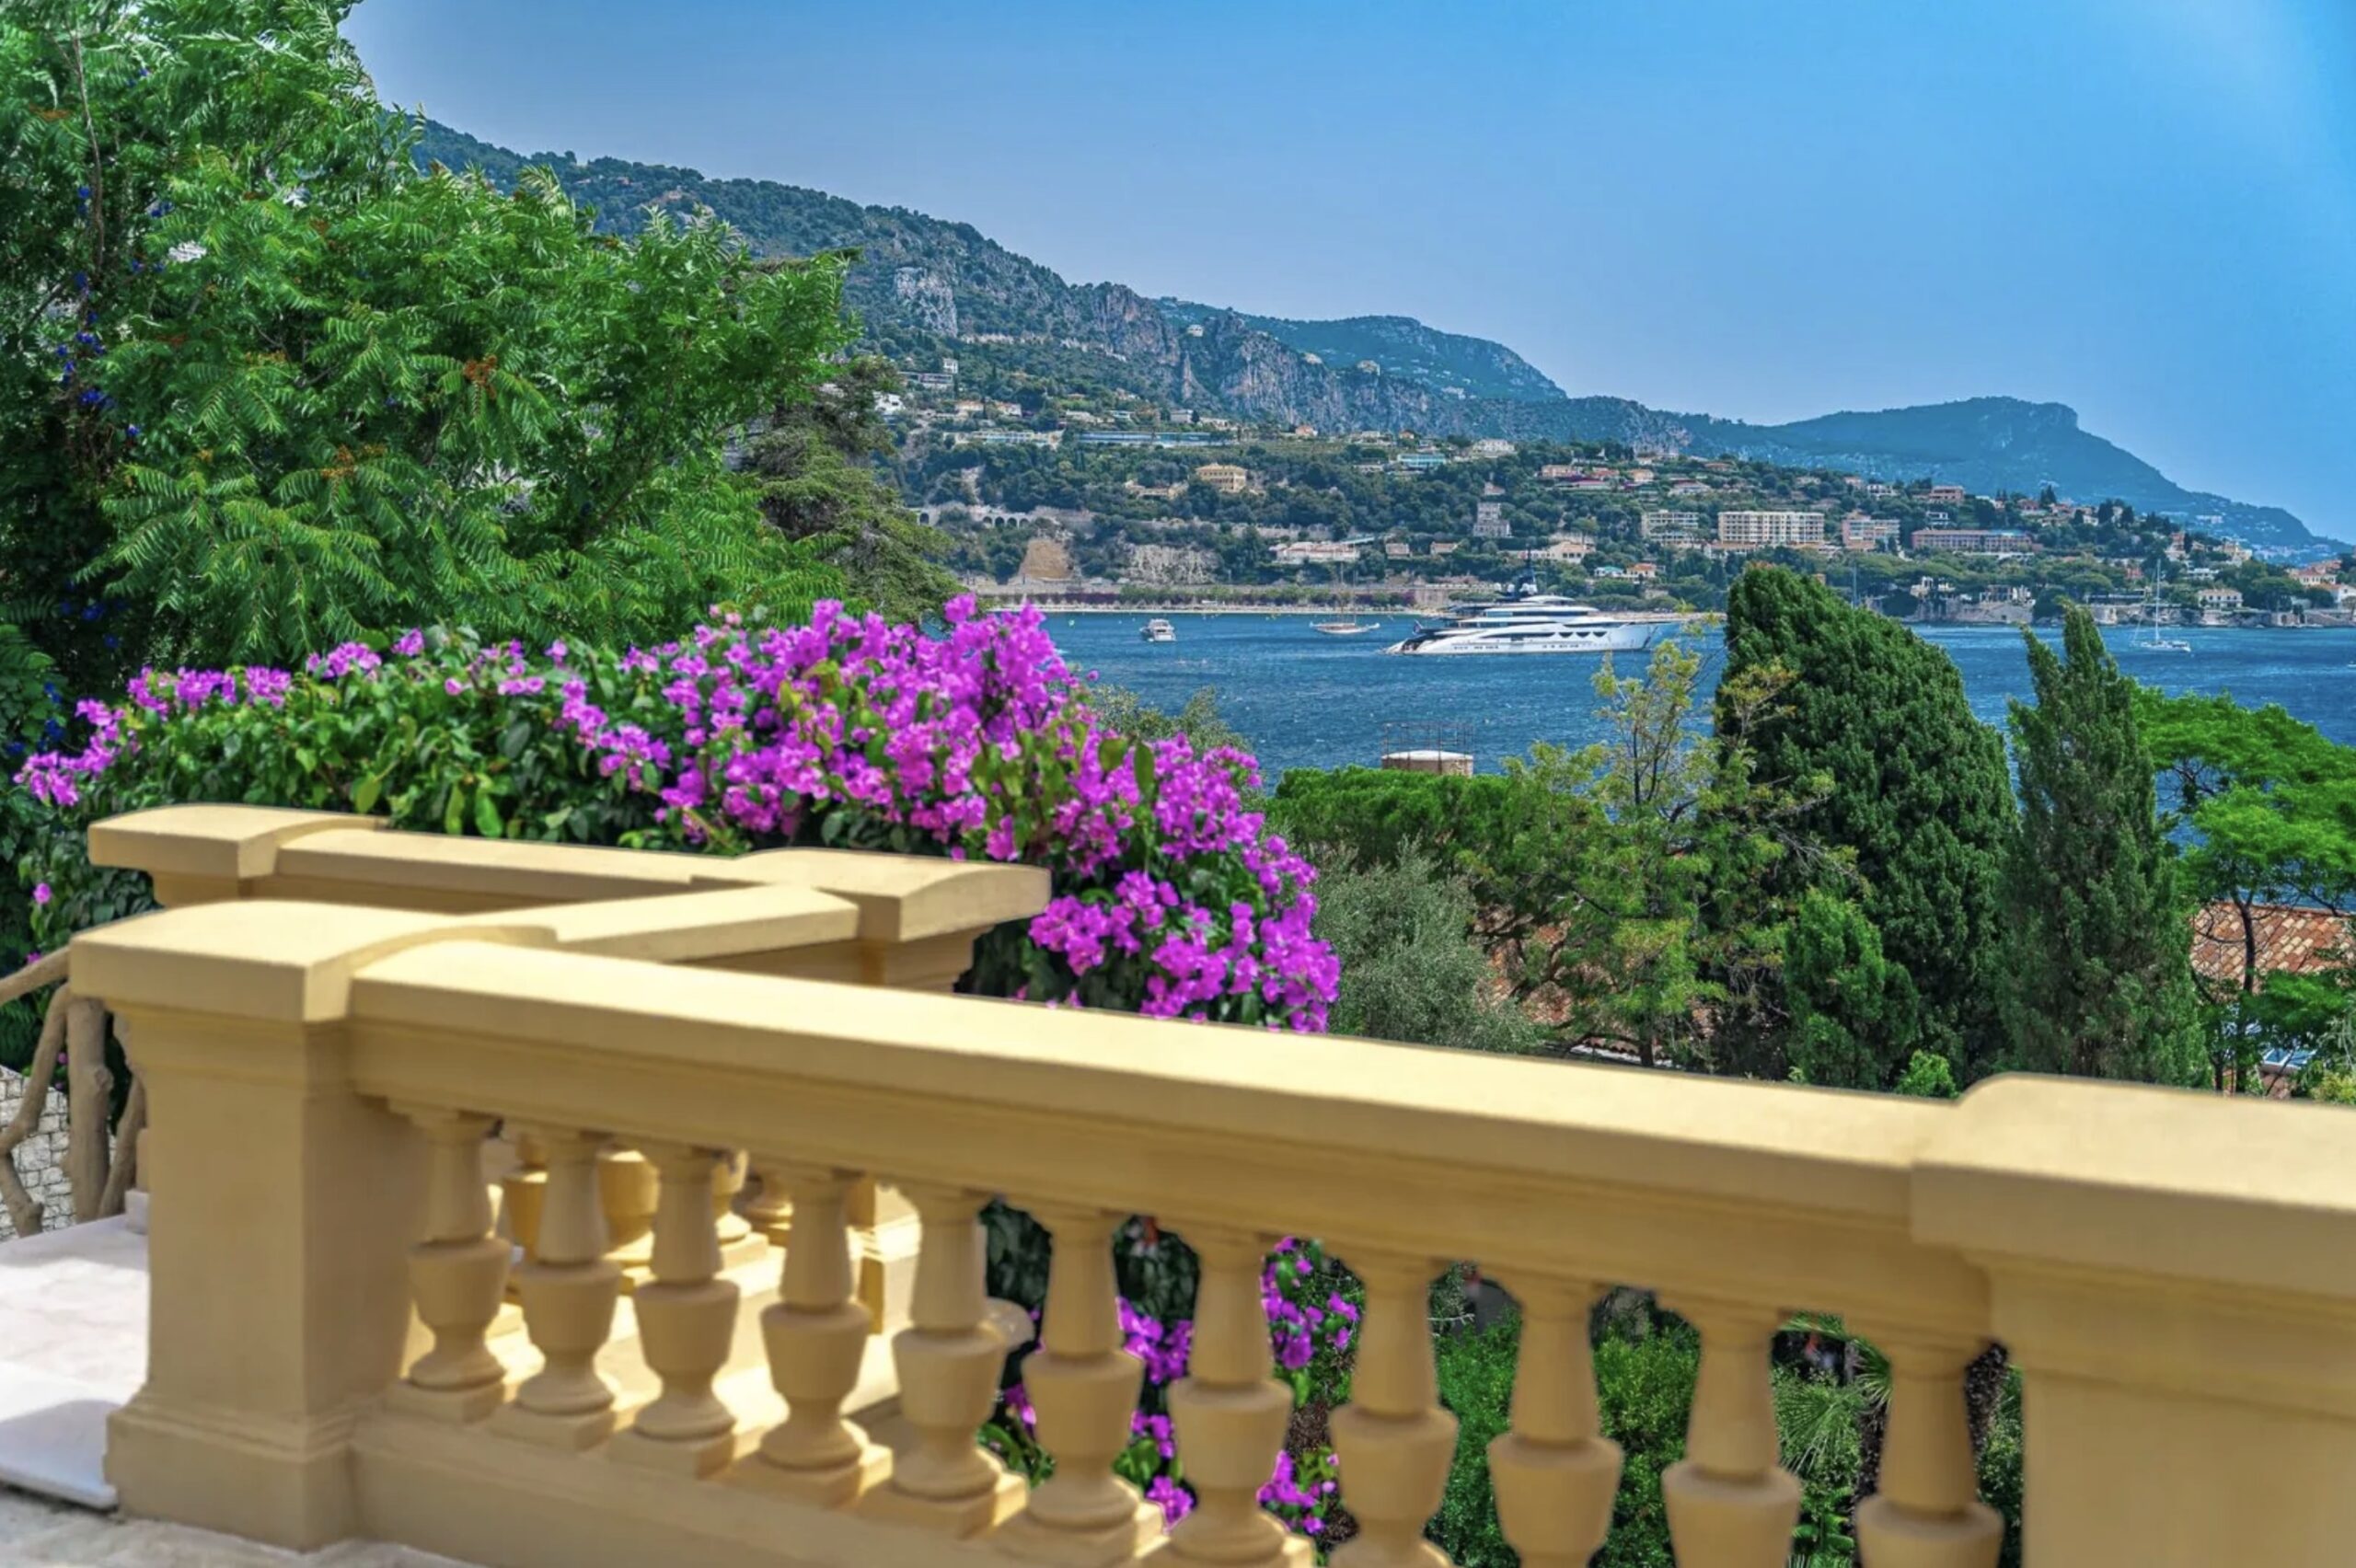 Ett exklusivt slott på Rivieran. Här hittar du drömboenden och exklusiva fastigheter samt en guide med exklusiva och utvalda fastighetsmäklare.